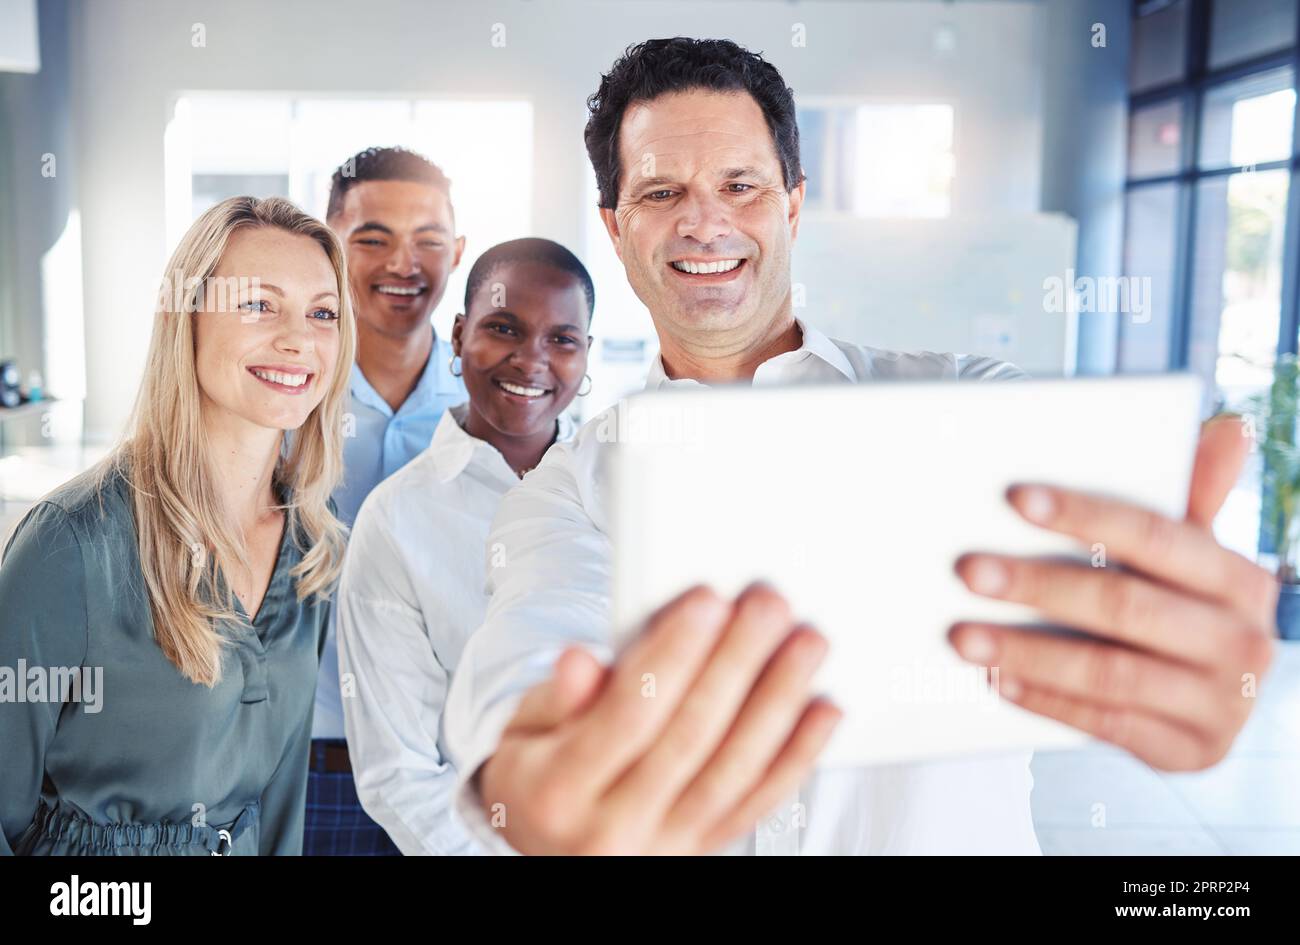 Les professionnels prennent leurs selfie sur une tablette au travail, travaillent en équipe avec les techniciens lors de réunions au sein d'une entreprise et sont motivés par un partenariat. Photographie du travail d'équipe au lancement du marketing numérique Banque D'Images